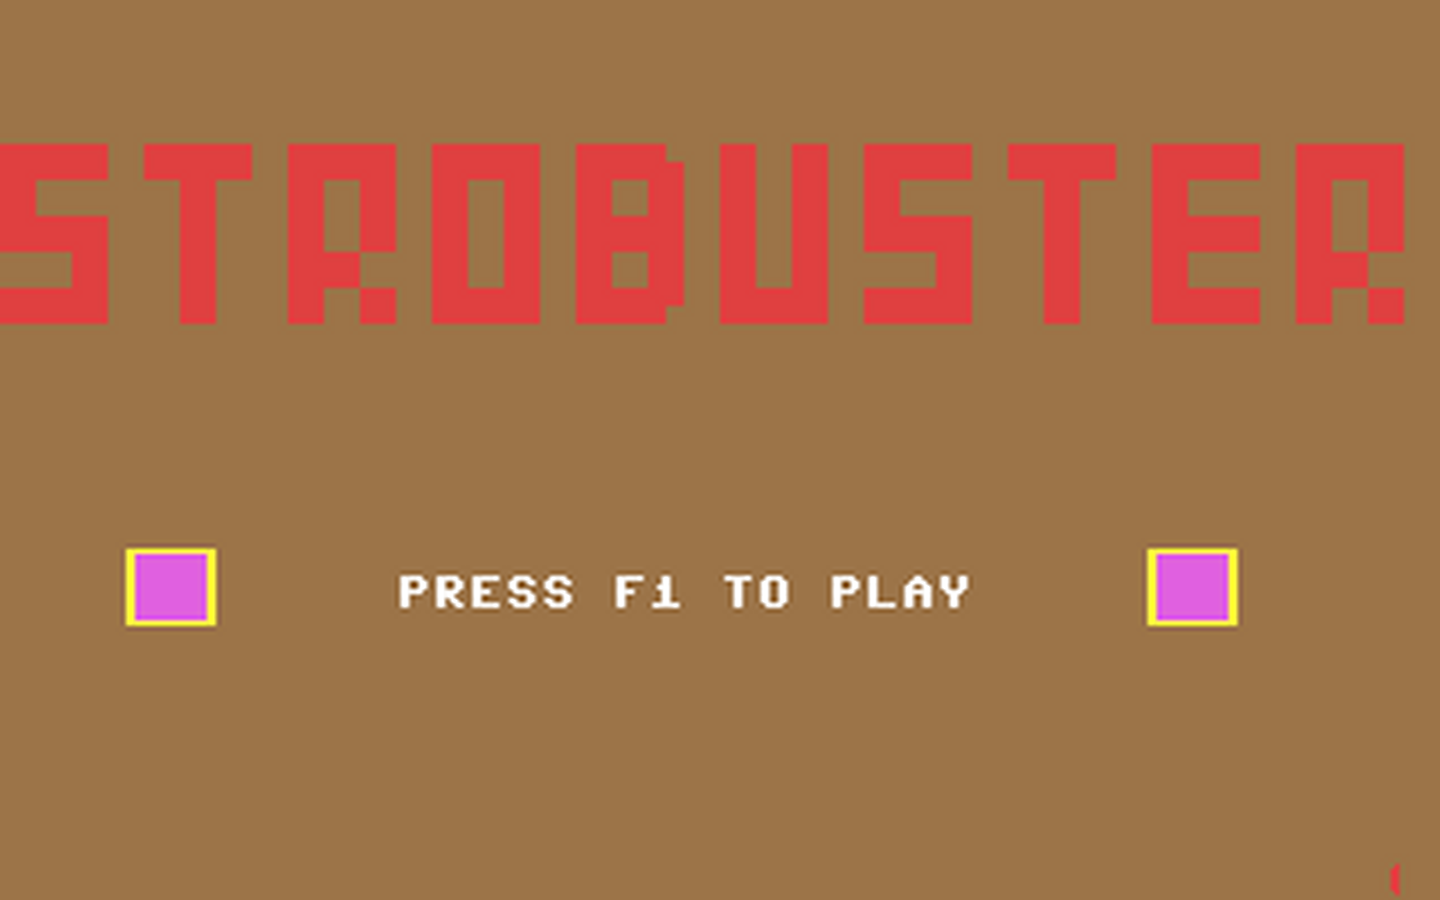 C64 GameBase Strobuster (Not_Published)